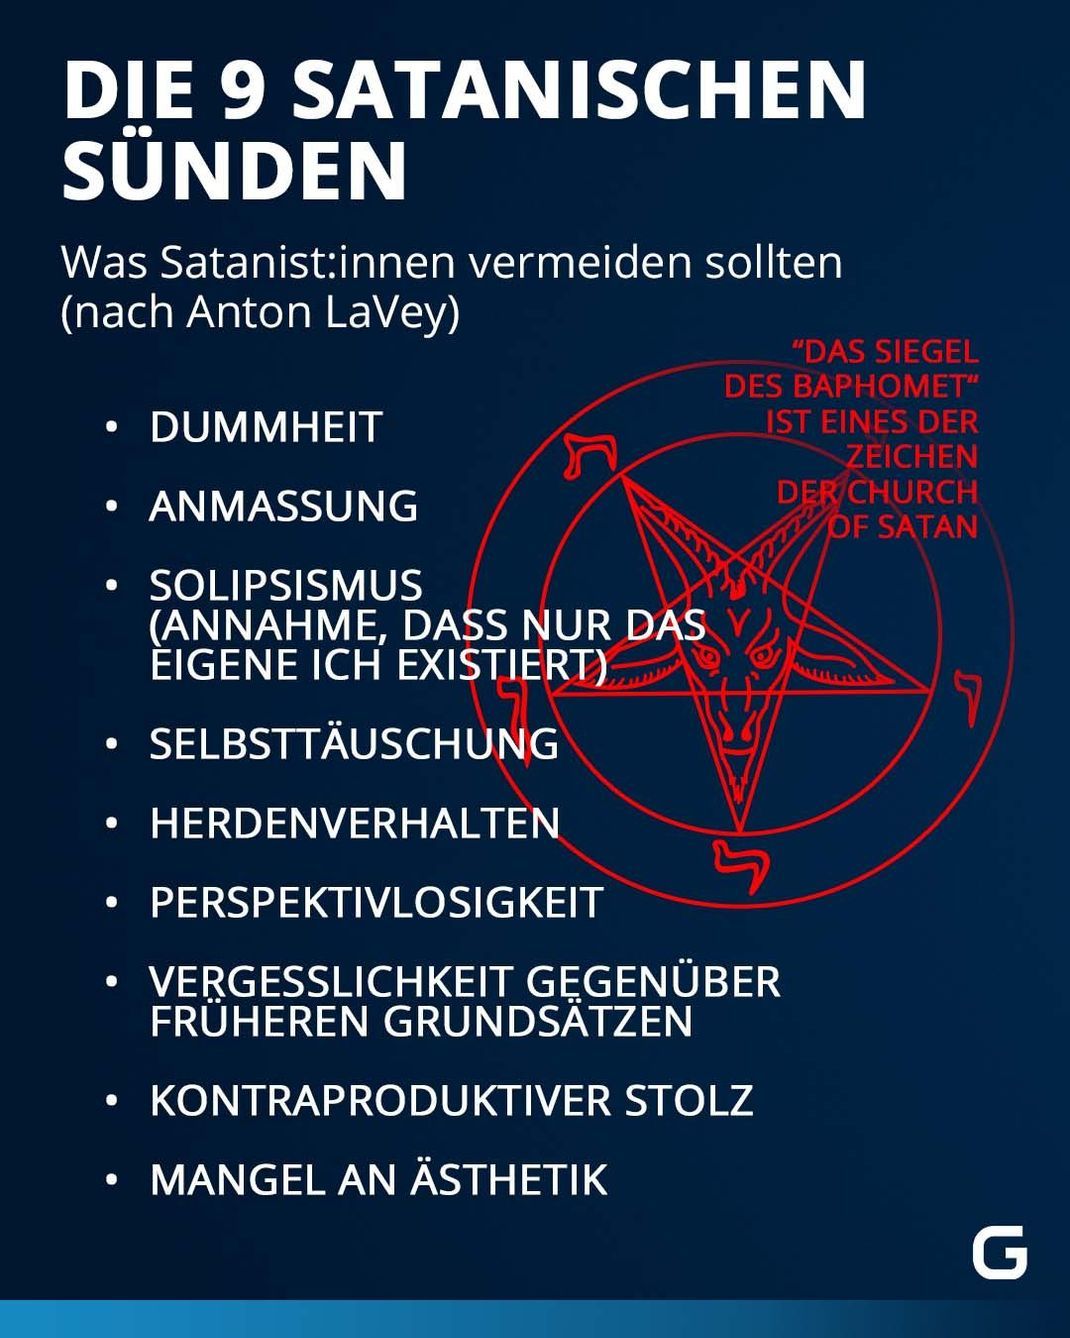 9 Satanische Sünden nach Anton LaVey